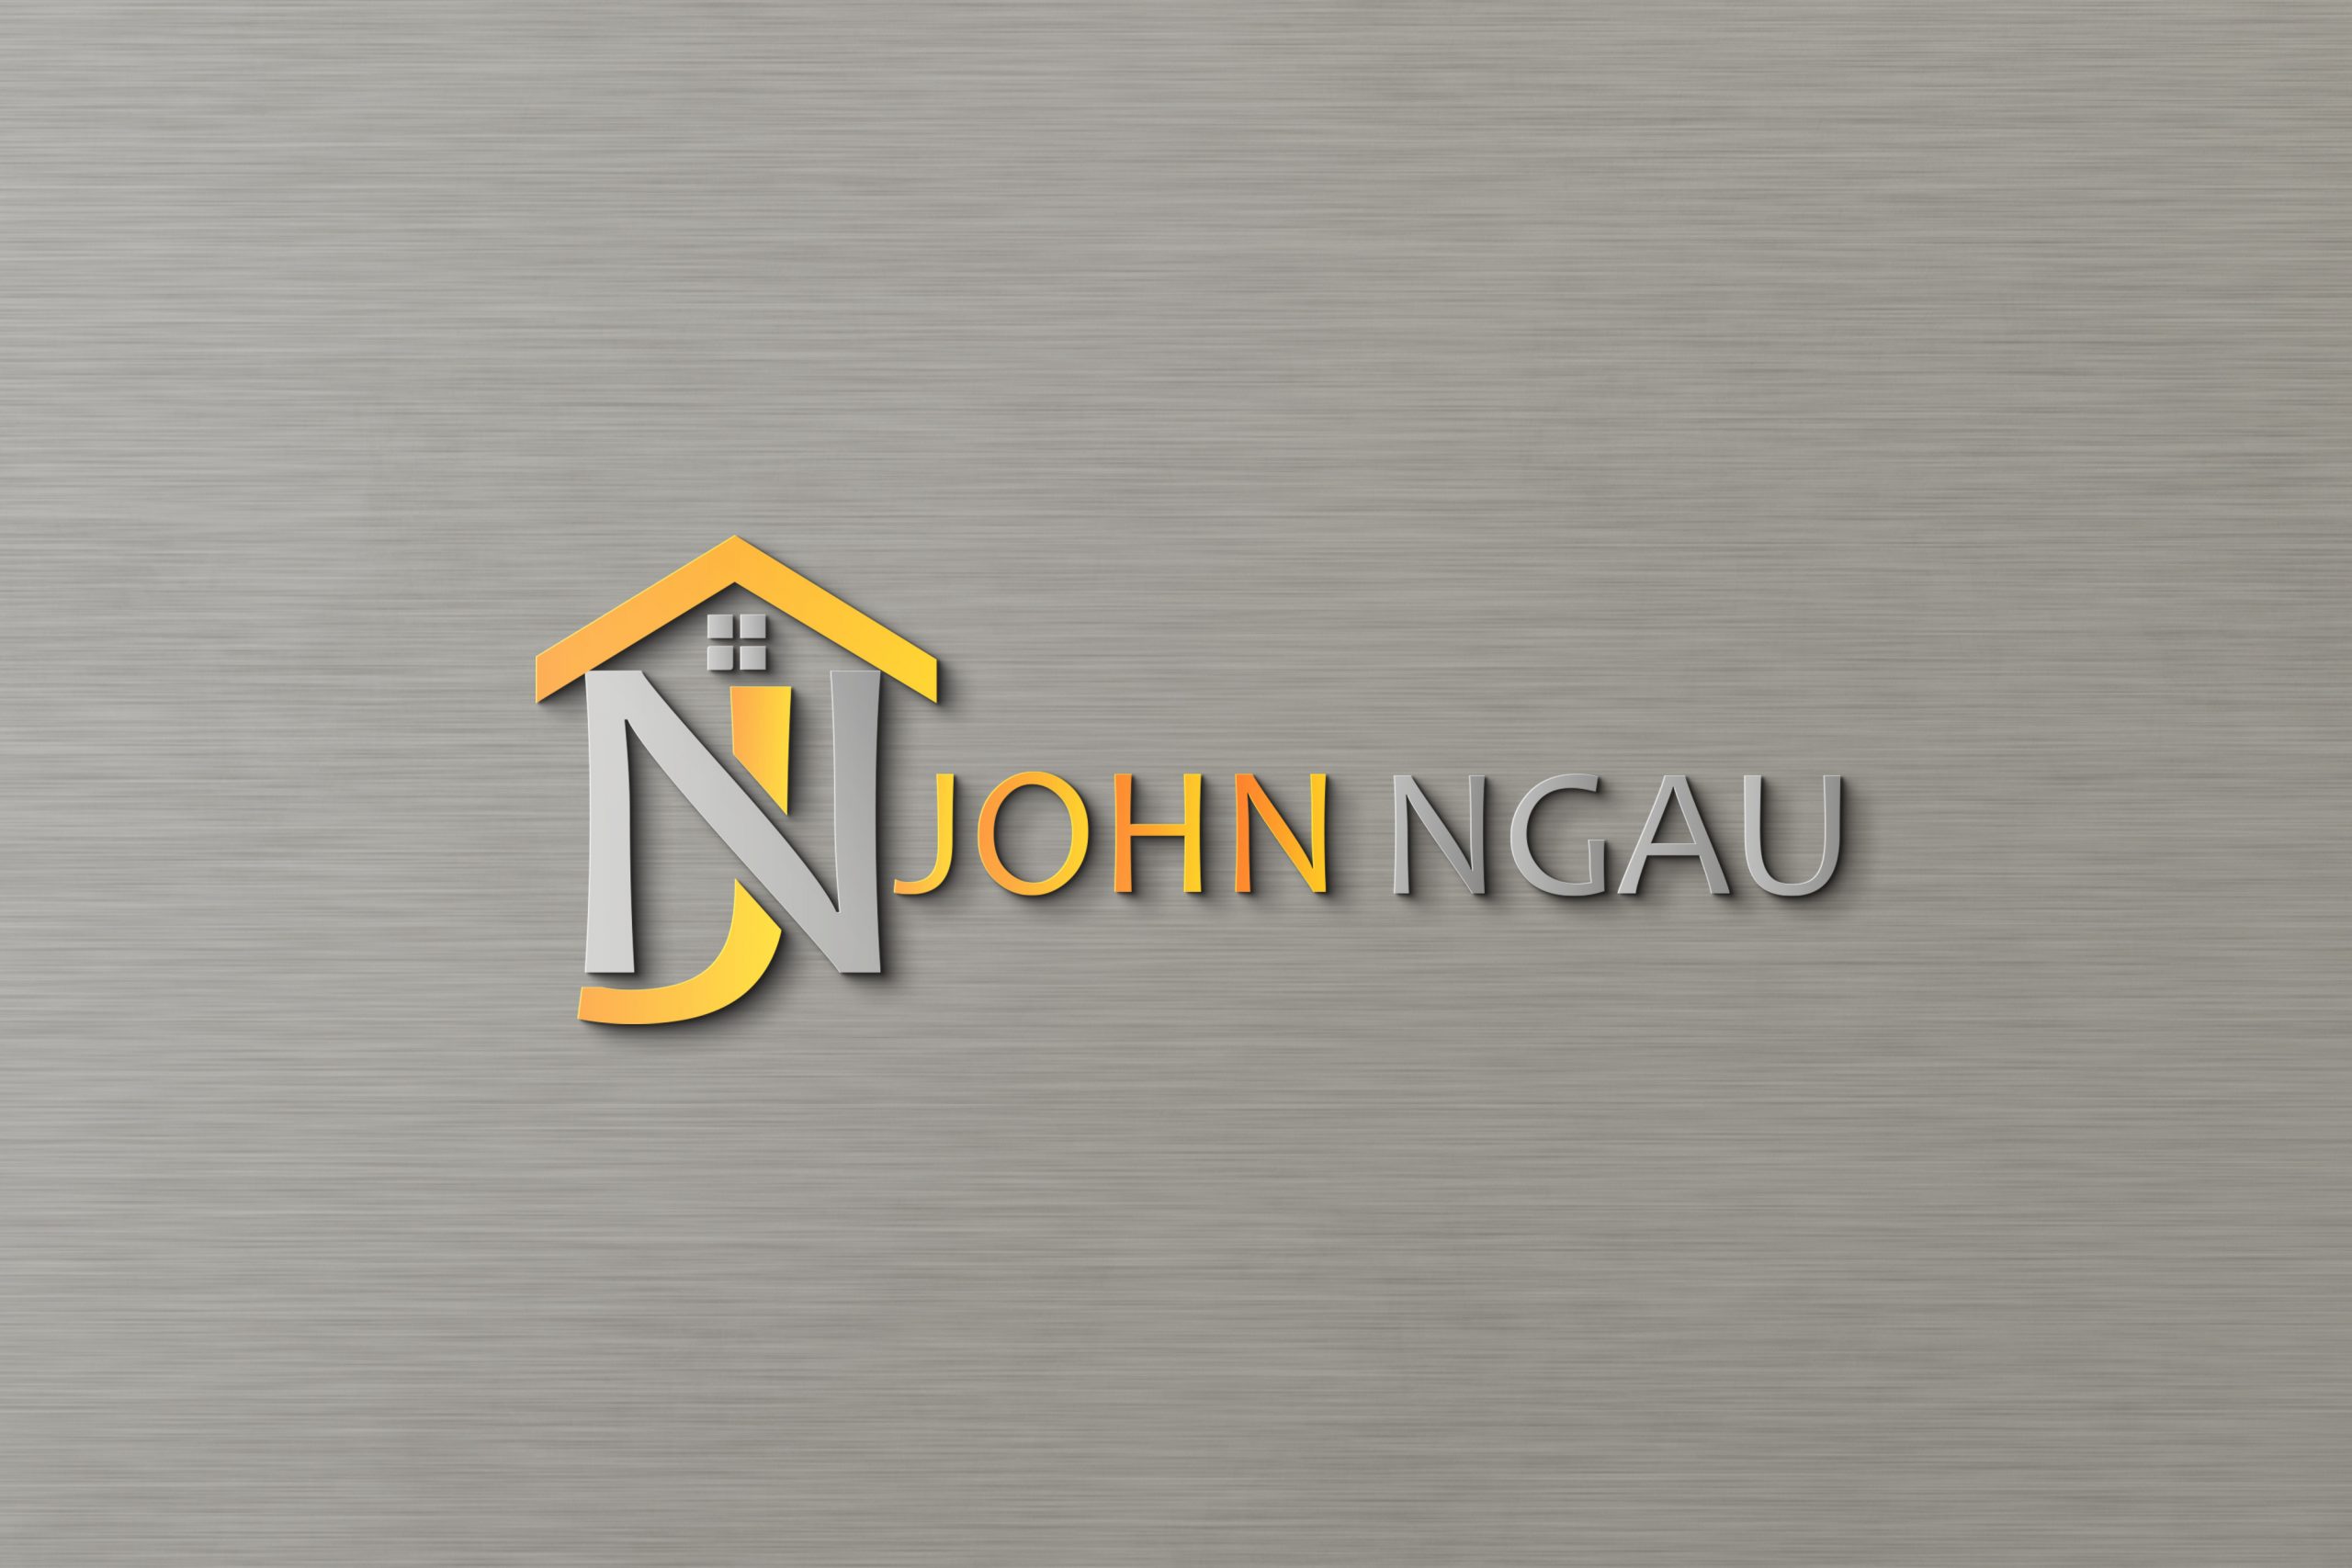 John Ngau